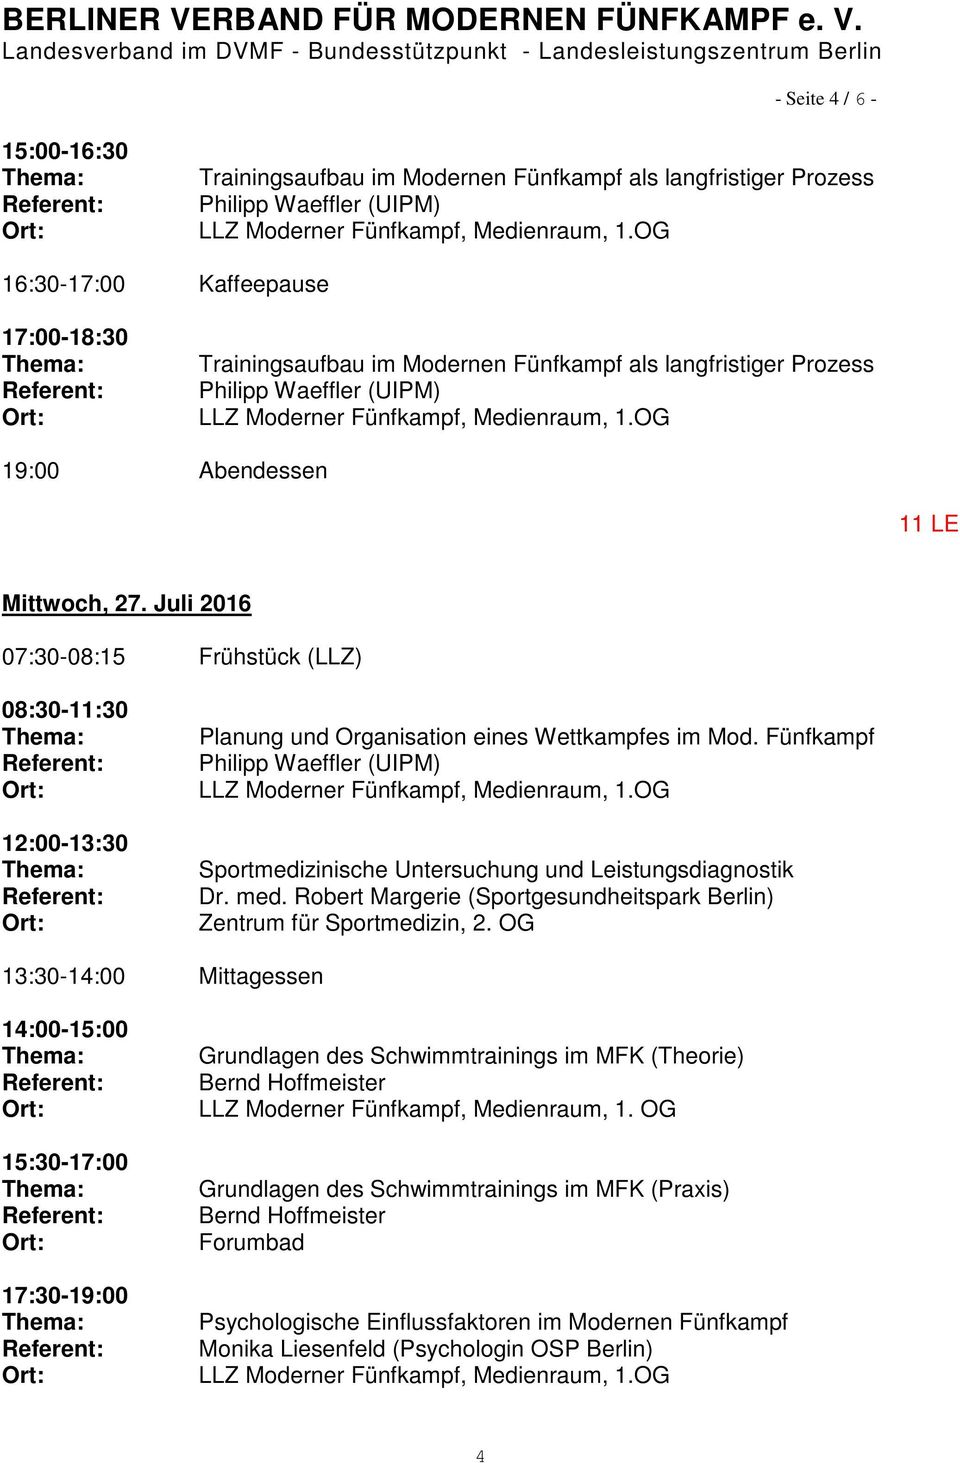 Fünfkampf Philipp Waeffler (UIPM) Sportmedizinische Untersuchung und Leistungsdiagnostik Dr. med. Robert Margerie (Sportgesundheitspark Berlin) Zentrum für Sportmedizin, 2.